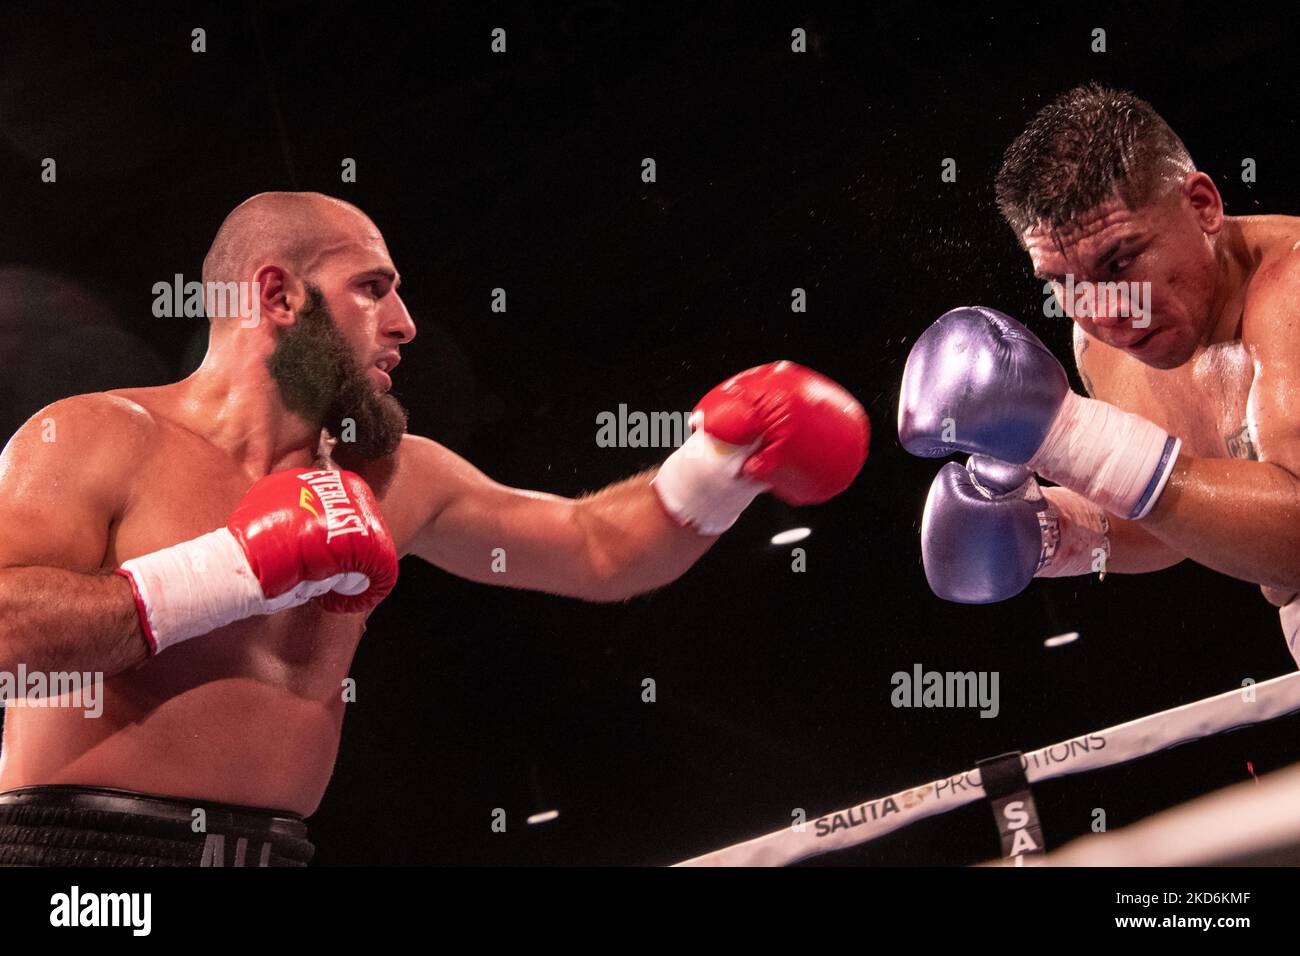 Boxeador deportista peleando con guantes rojos en jaula de boxeo interior  retrato de boxeador profesional